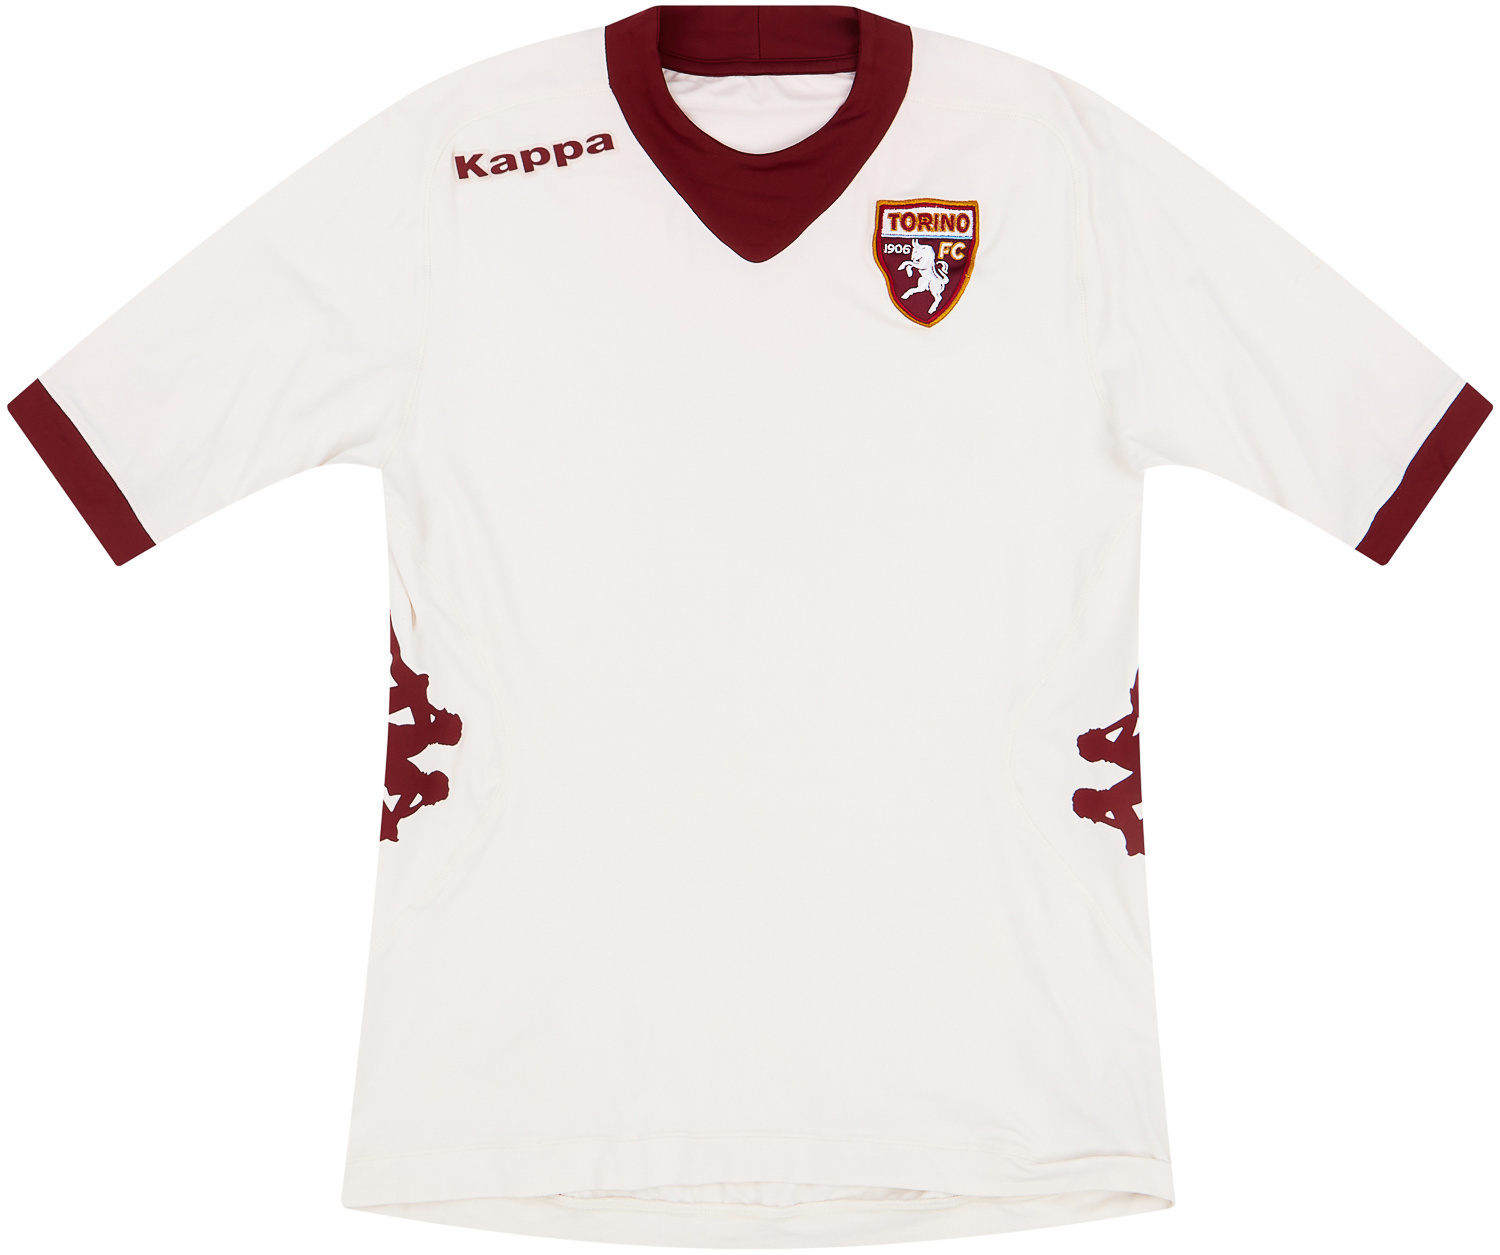 Torino  Fora camisa (Original)